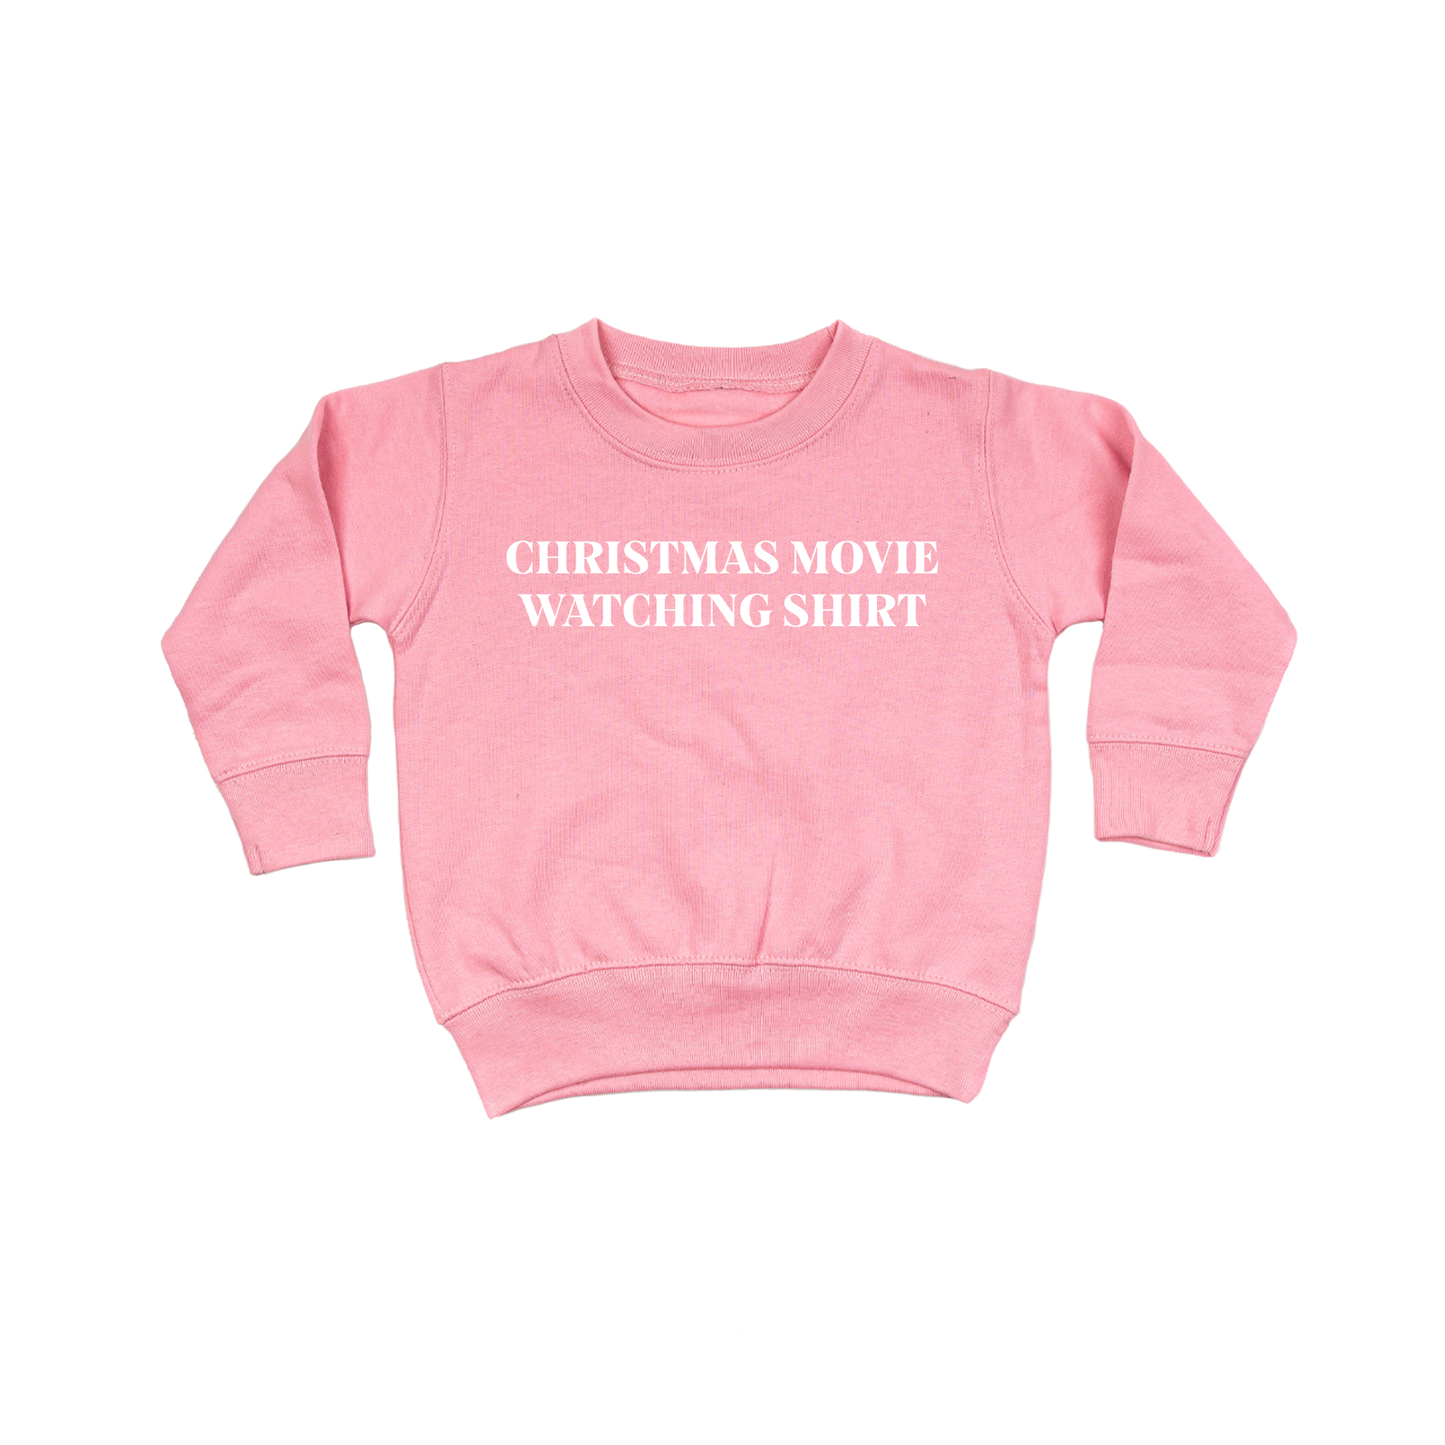 Christmas Movie Watching Shirt (White) - Kids Sweatshirt (Pink)